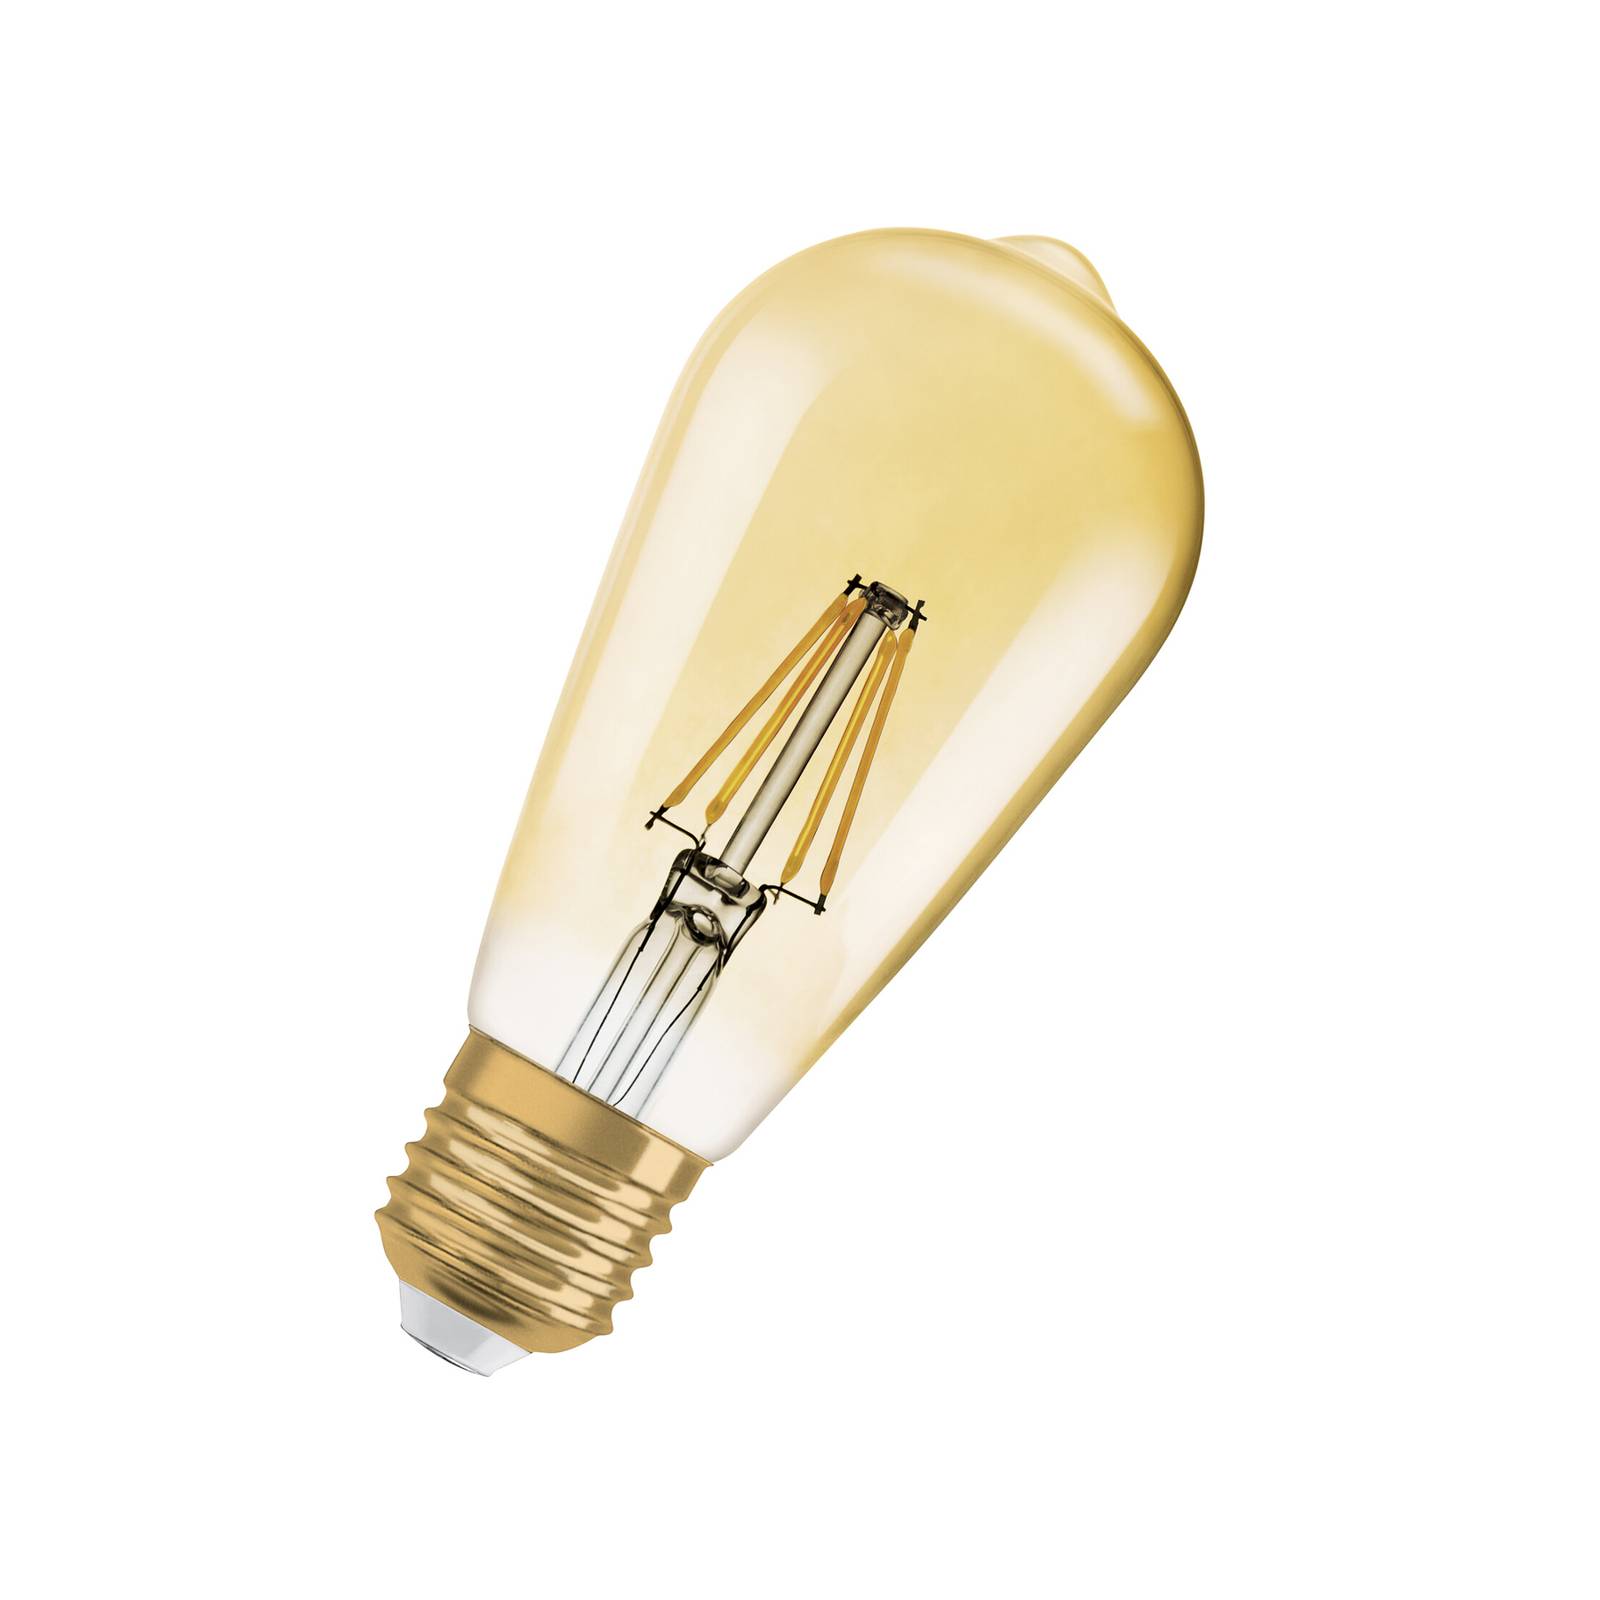 Zdjęcia - Żarówka Osram LED Vintage 1906 Edison, złota, E27, 6,5 W, 824, ściemniana. 